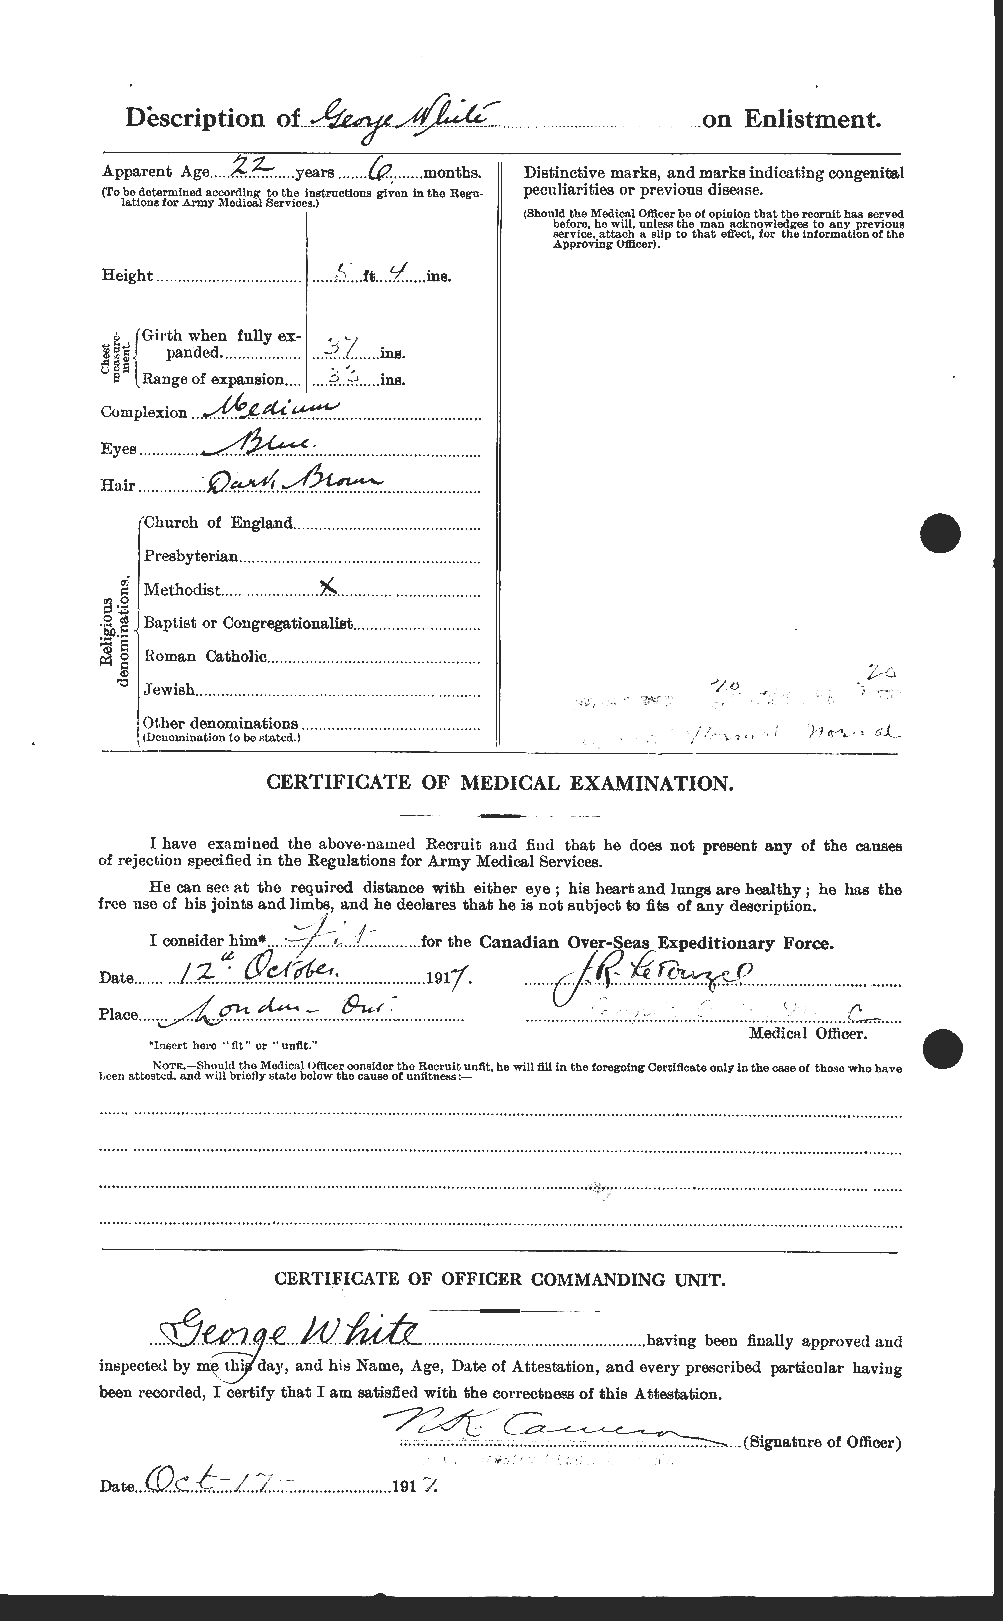 Dossiers du Personnel de la Première Guerre mondiale - CEC 669447b